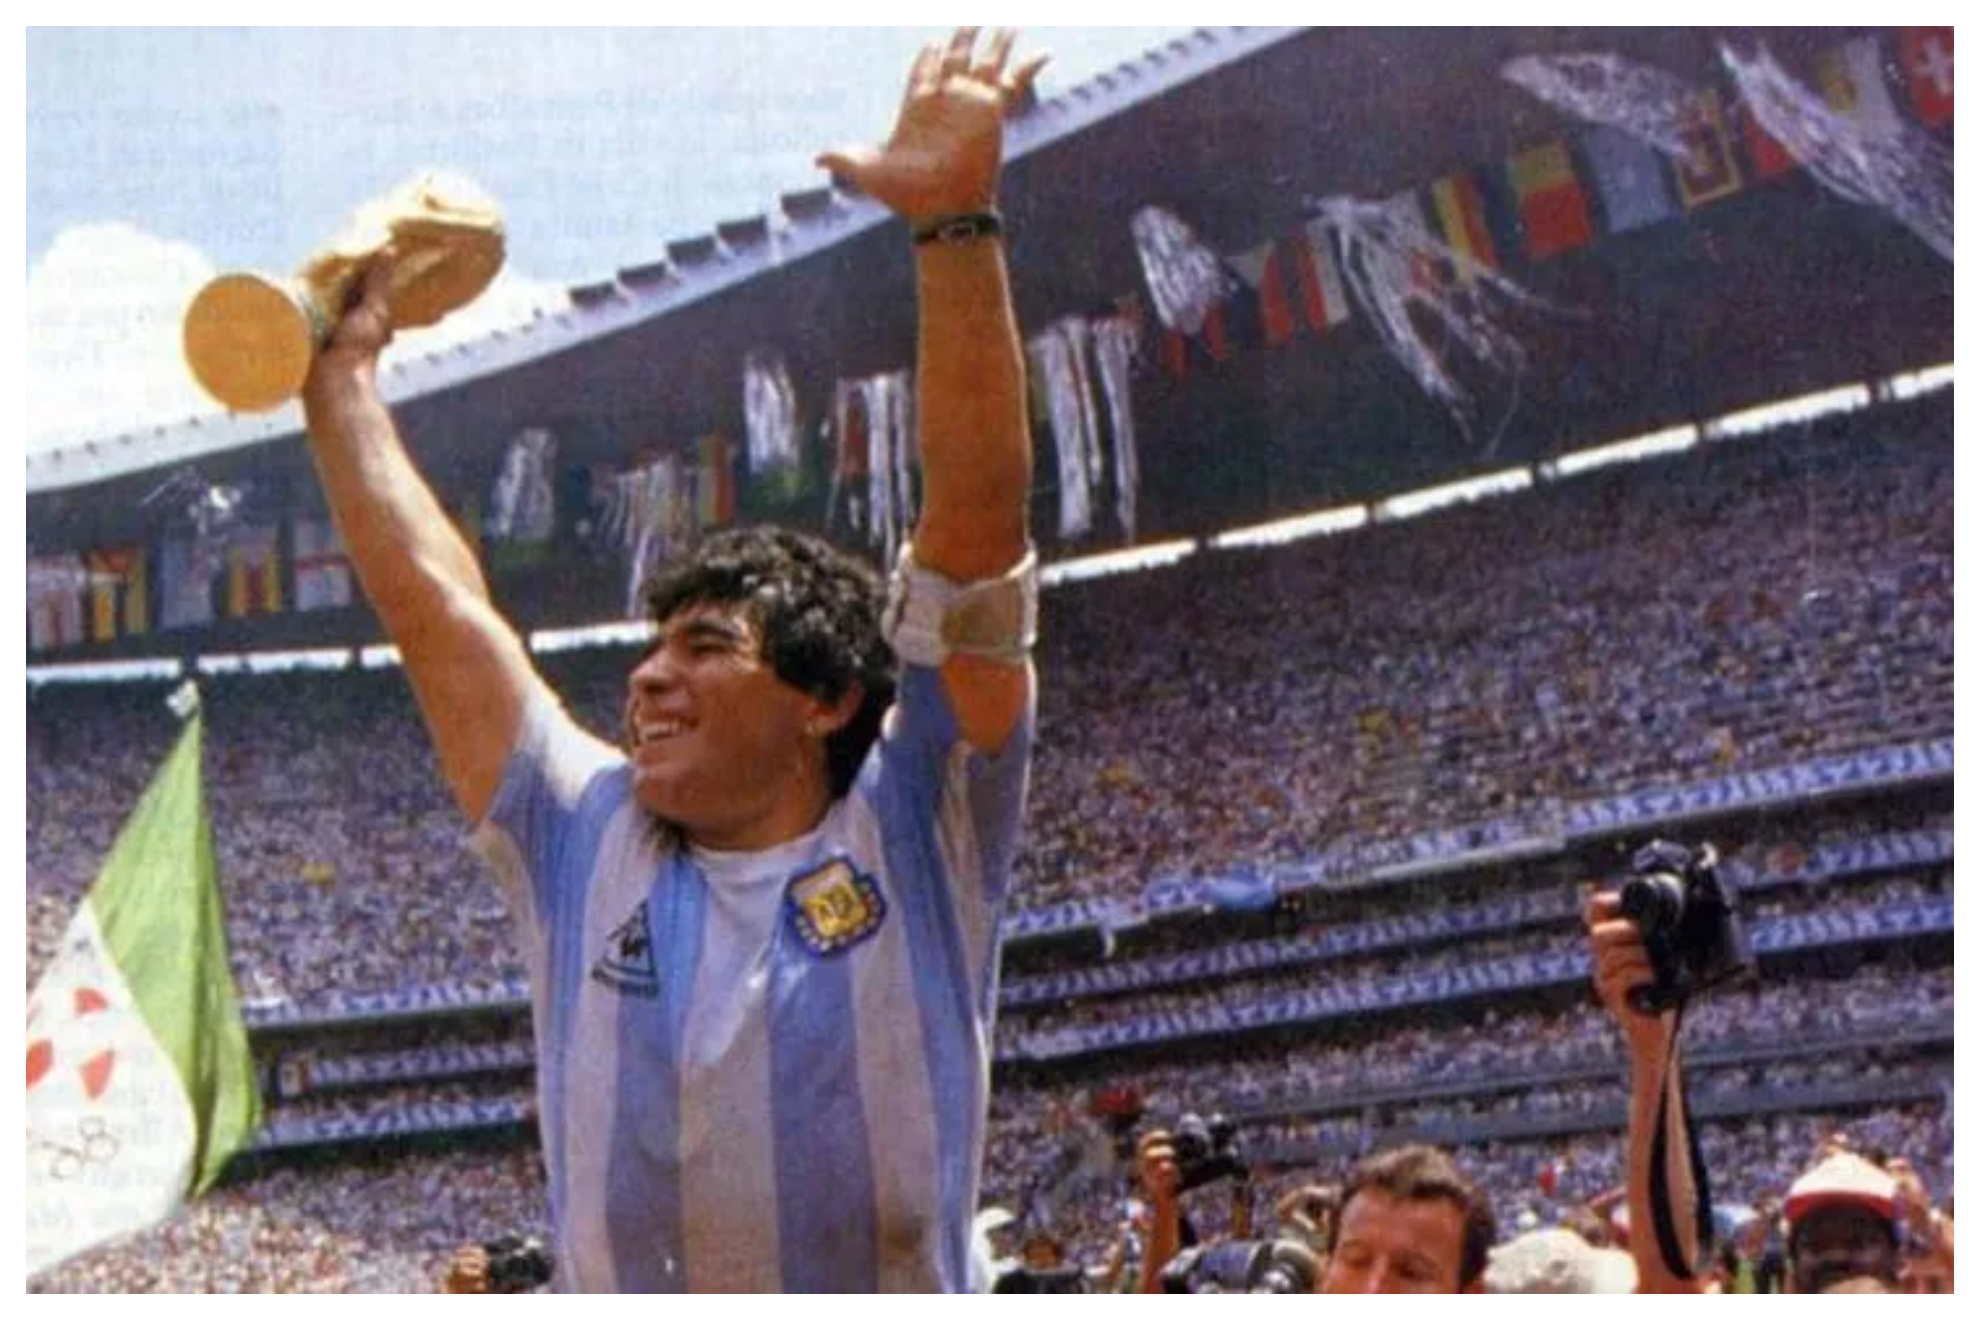 La camiseta de Maradona con la que celebró el Mundial 86.